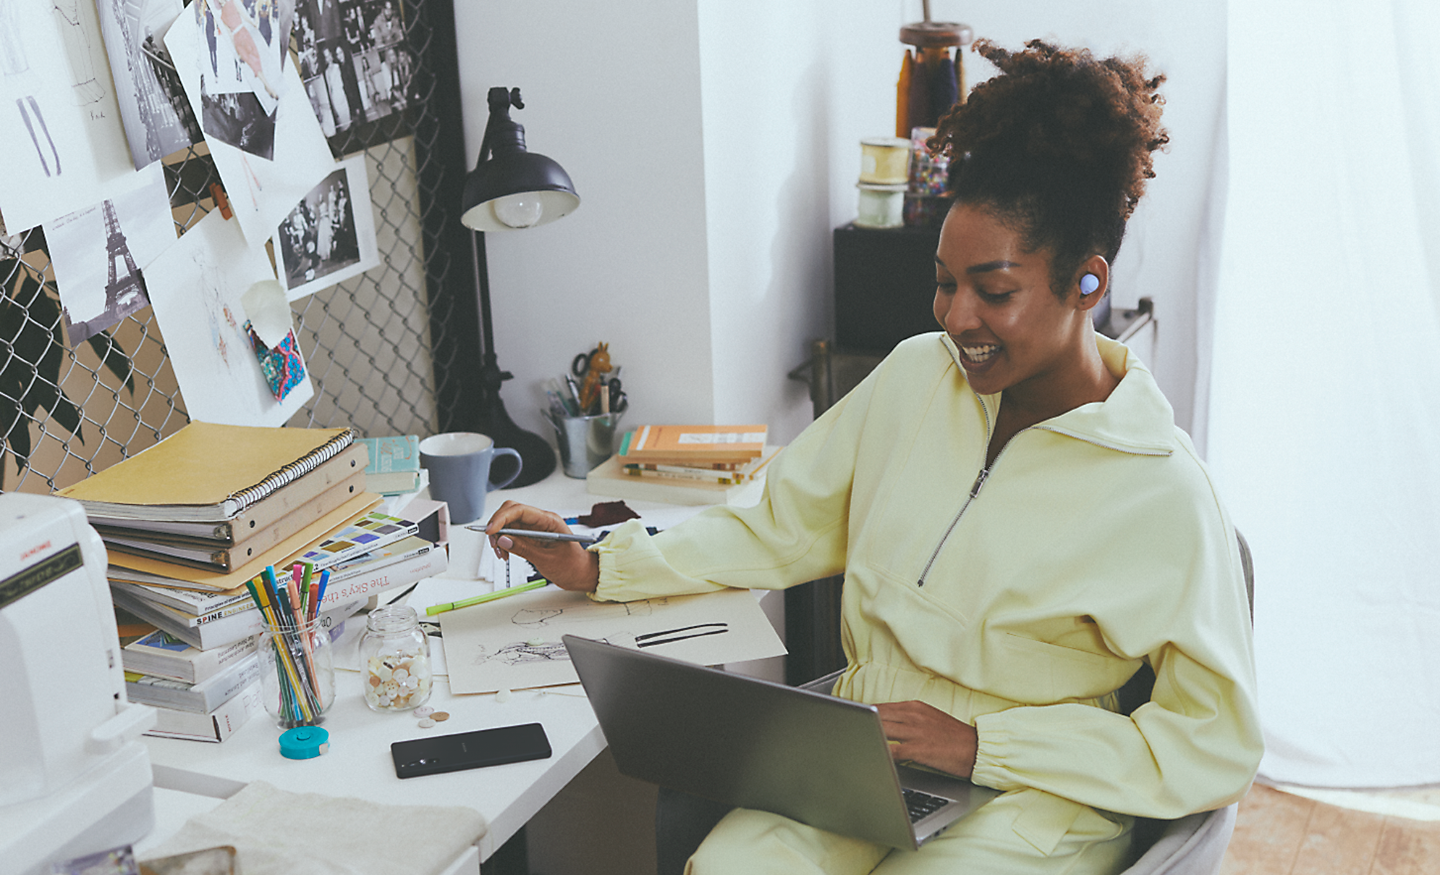 Abbildung einer Frau an einem vollen Schreibtisch, die an einem Notebook arbeitet und lavendelfarbene WF-C700N kabellose Noise Cancelling-Kopfhörer trägt